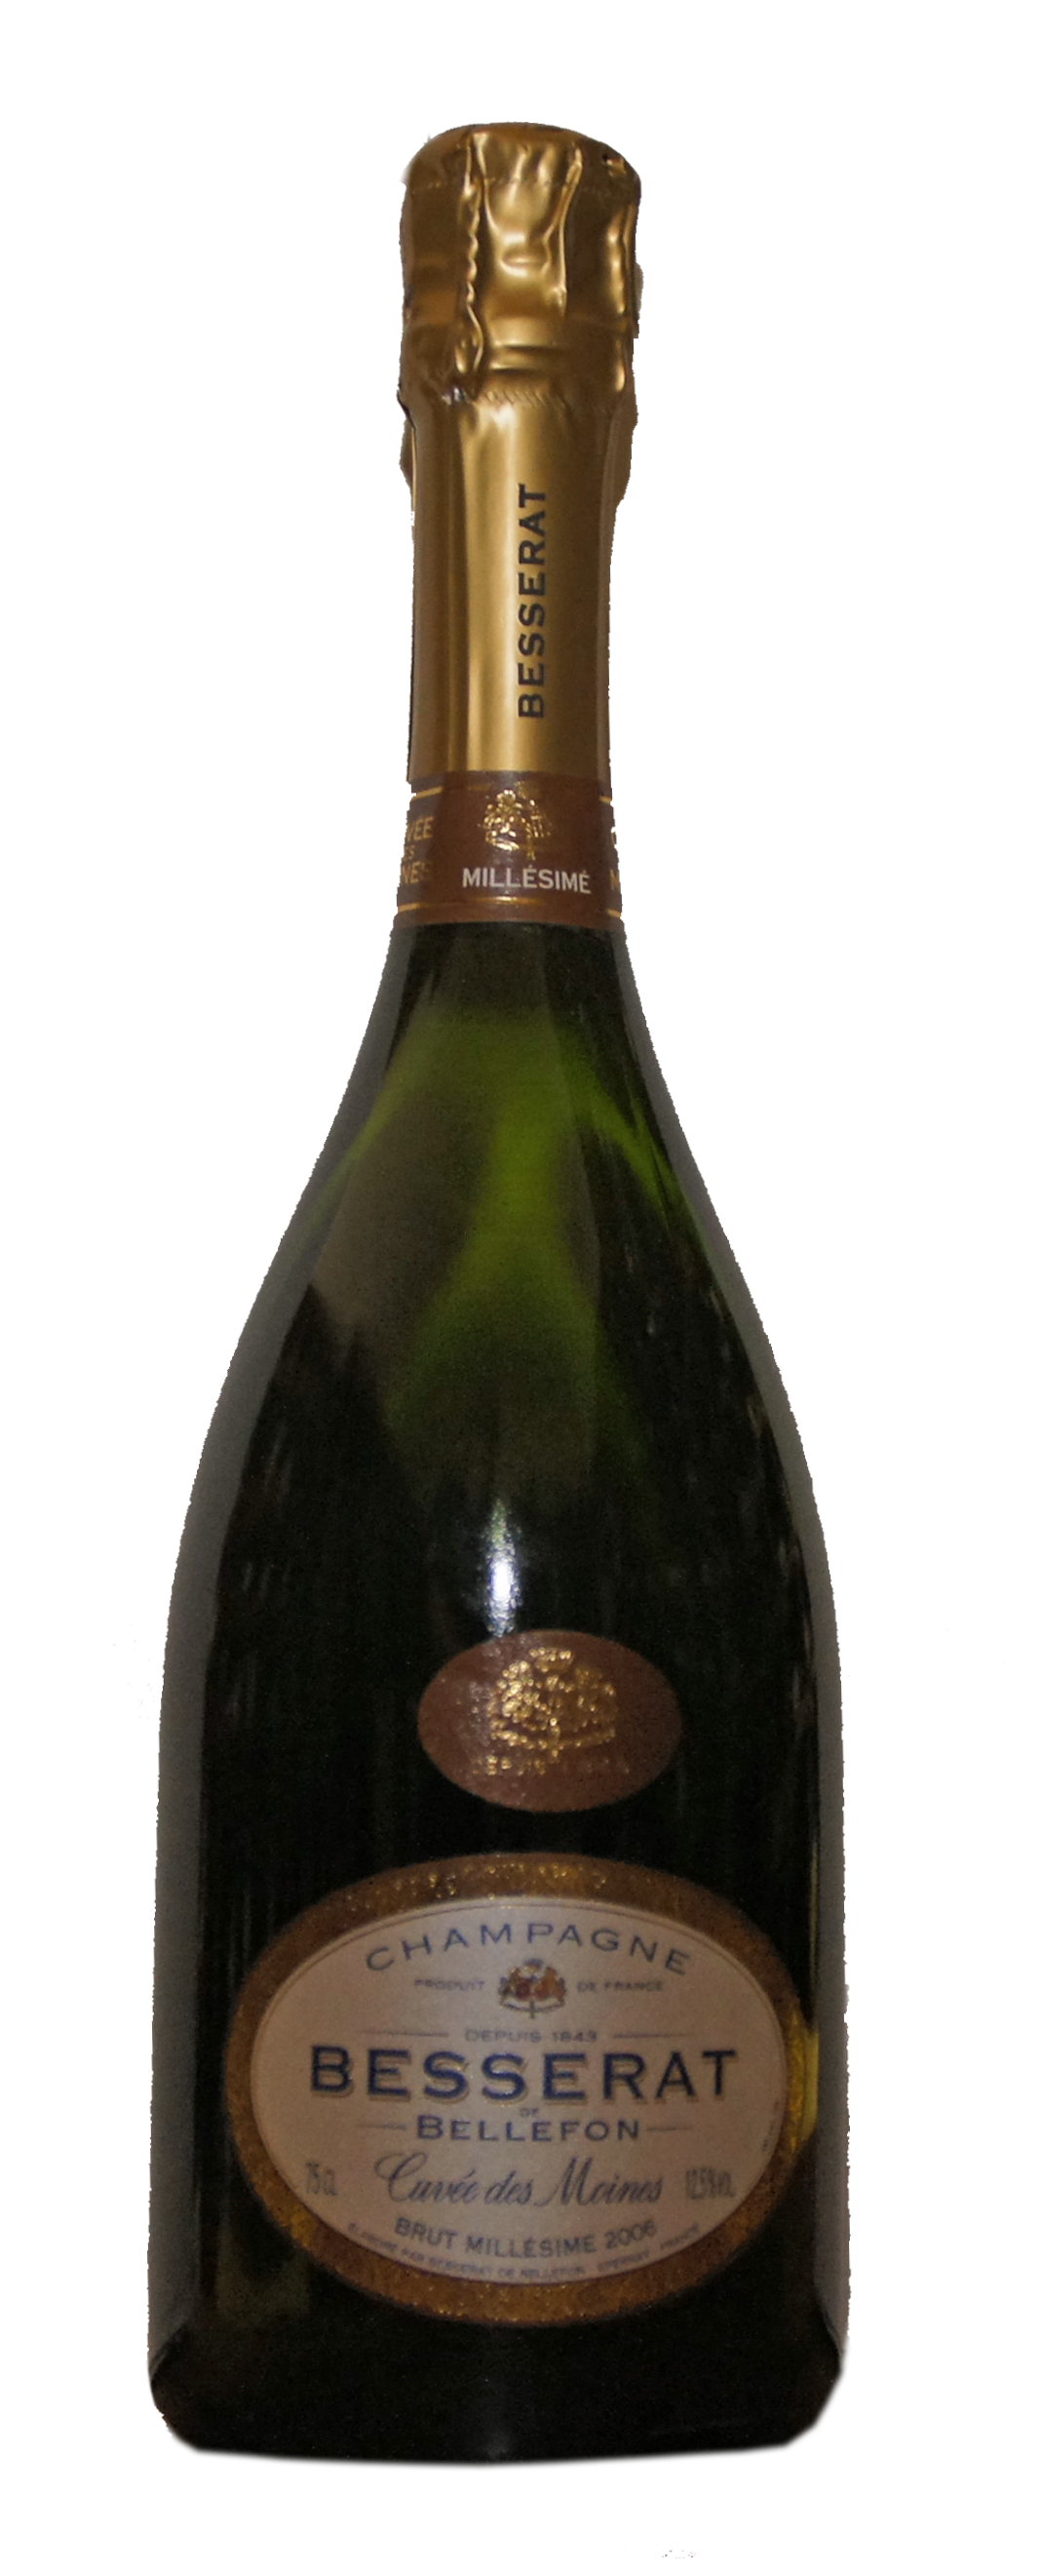 Champagne Cuveè des Moines, Brut Millesime 2006, B